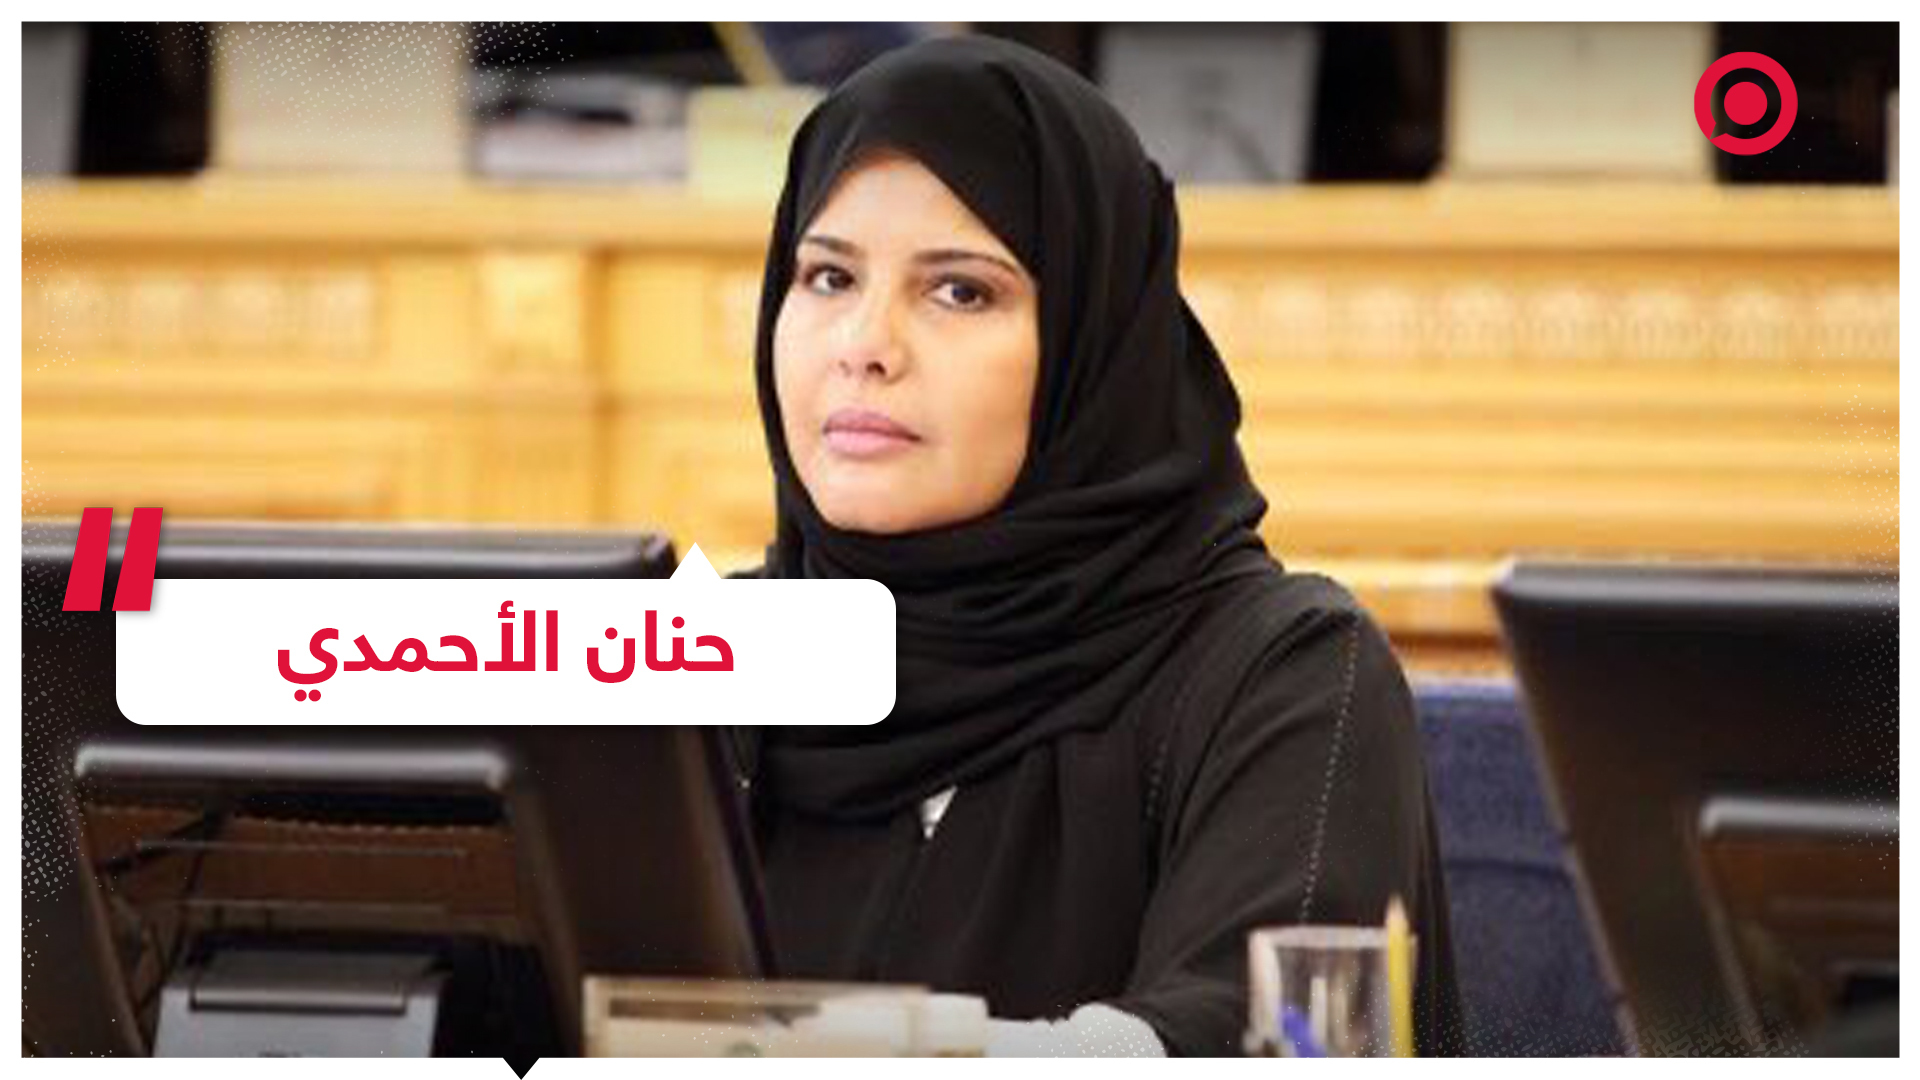 الدكتورة حنان الأحمدي أول امرأة تتولى منصب مساعد رئيس مجلس الشورى بالسعودية